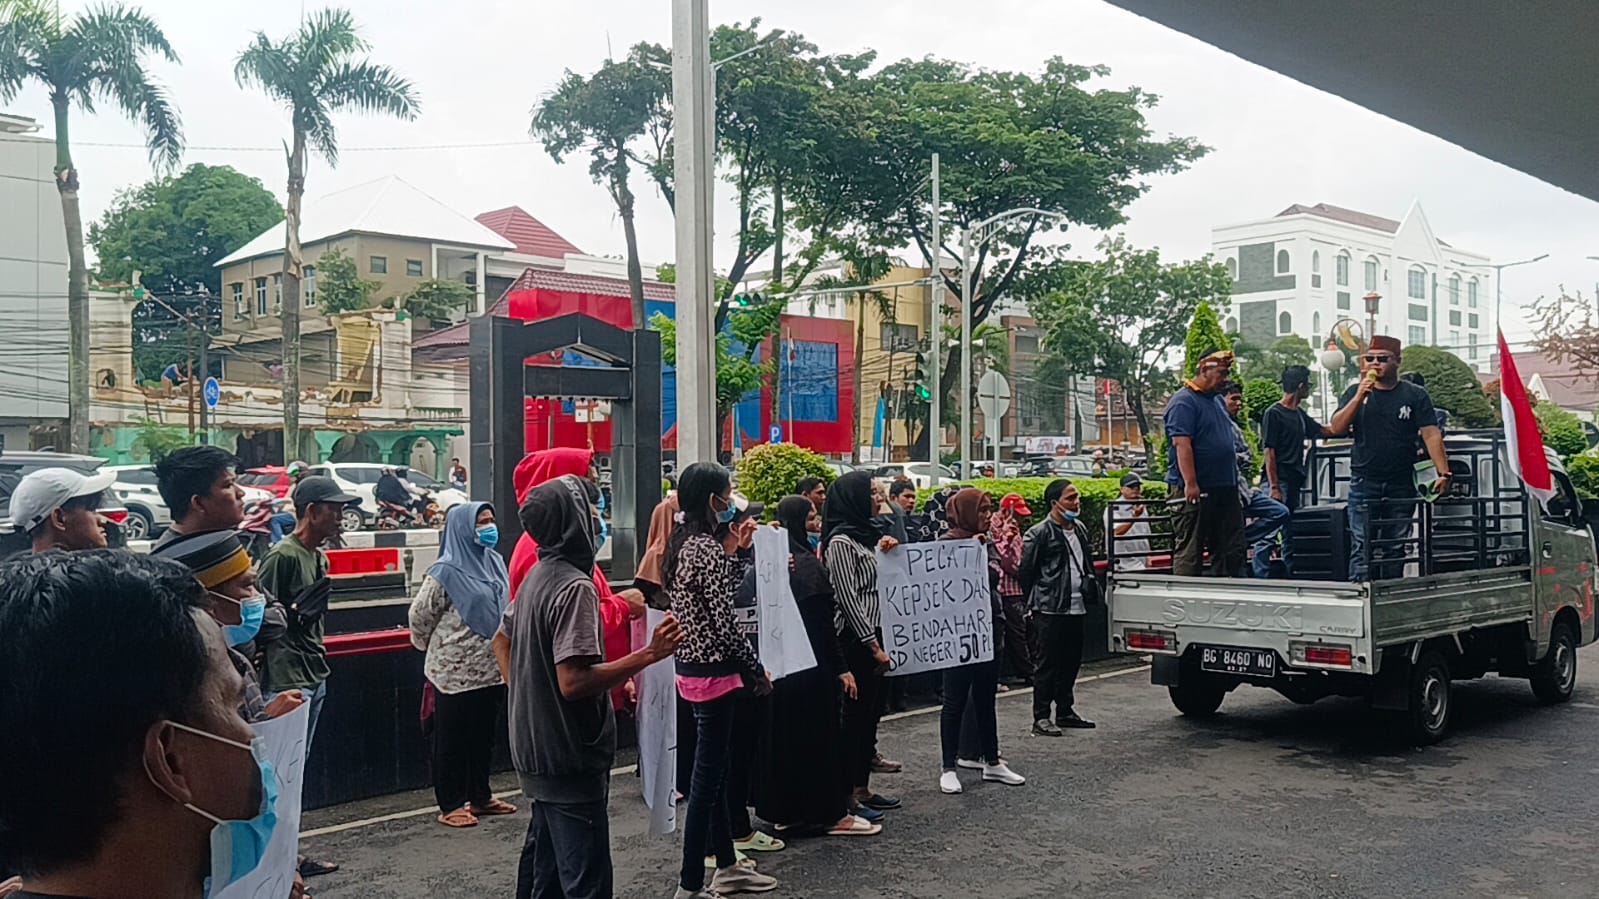 Massa Minta Walikota Pecat Kepala SD Negeri 50 Palembang, Diduga Tekait Kasus Sunat Gaji Honorer